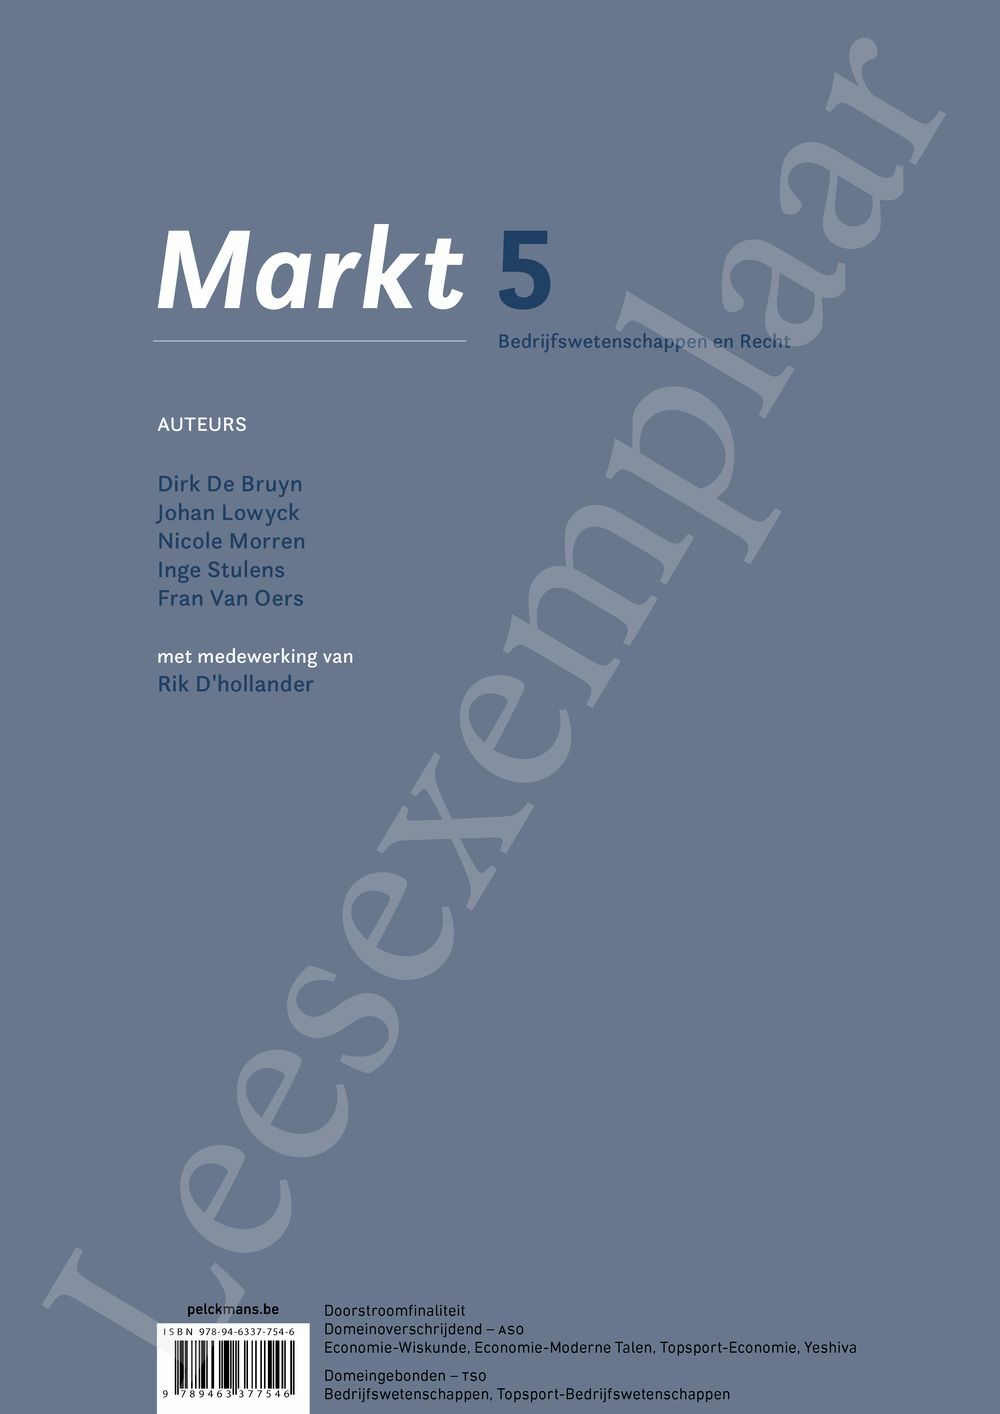 Preview: Markt 5 Bedrijfswetenschappen en Recht Handboek (incl. Pelckmans Portaal)